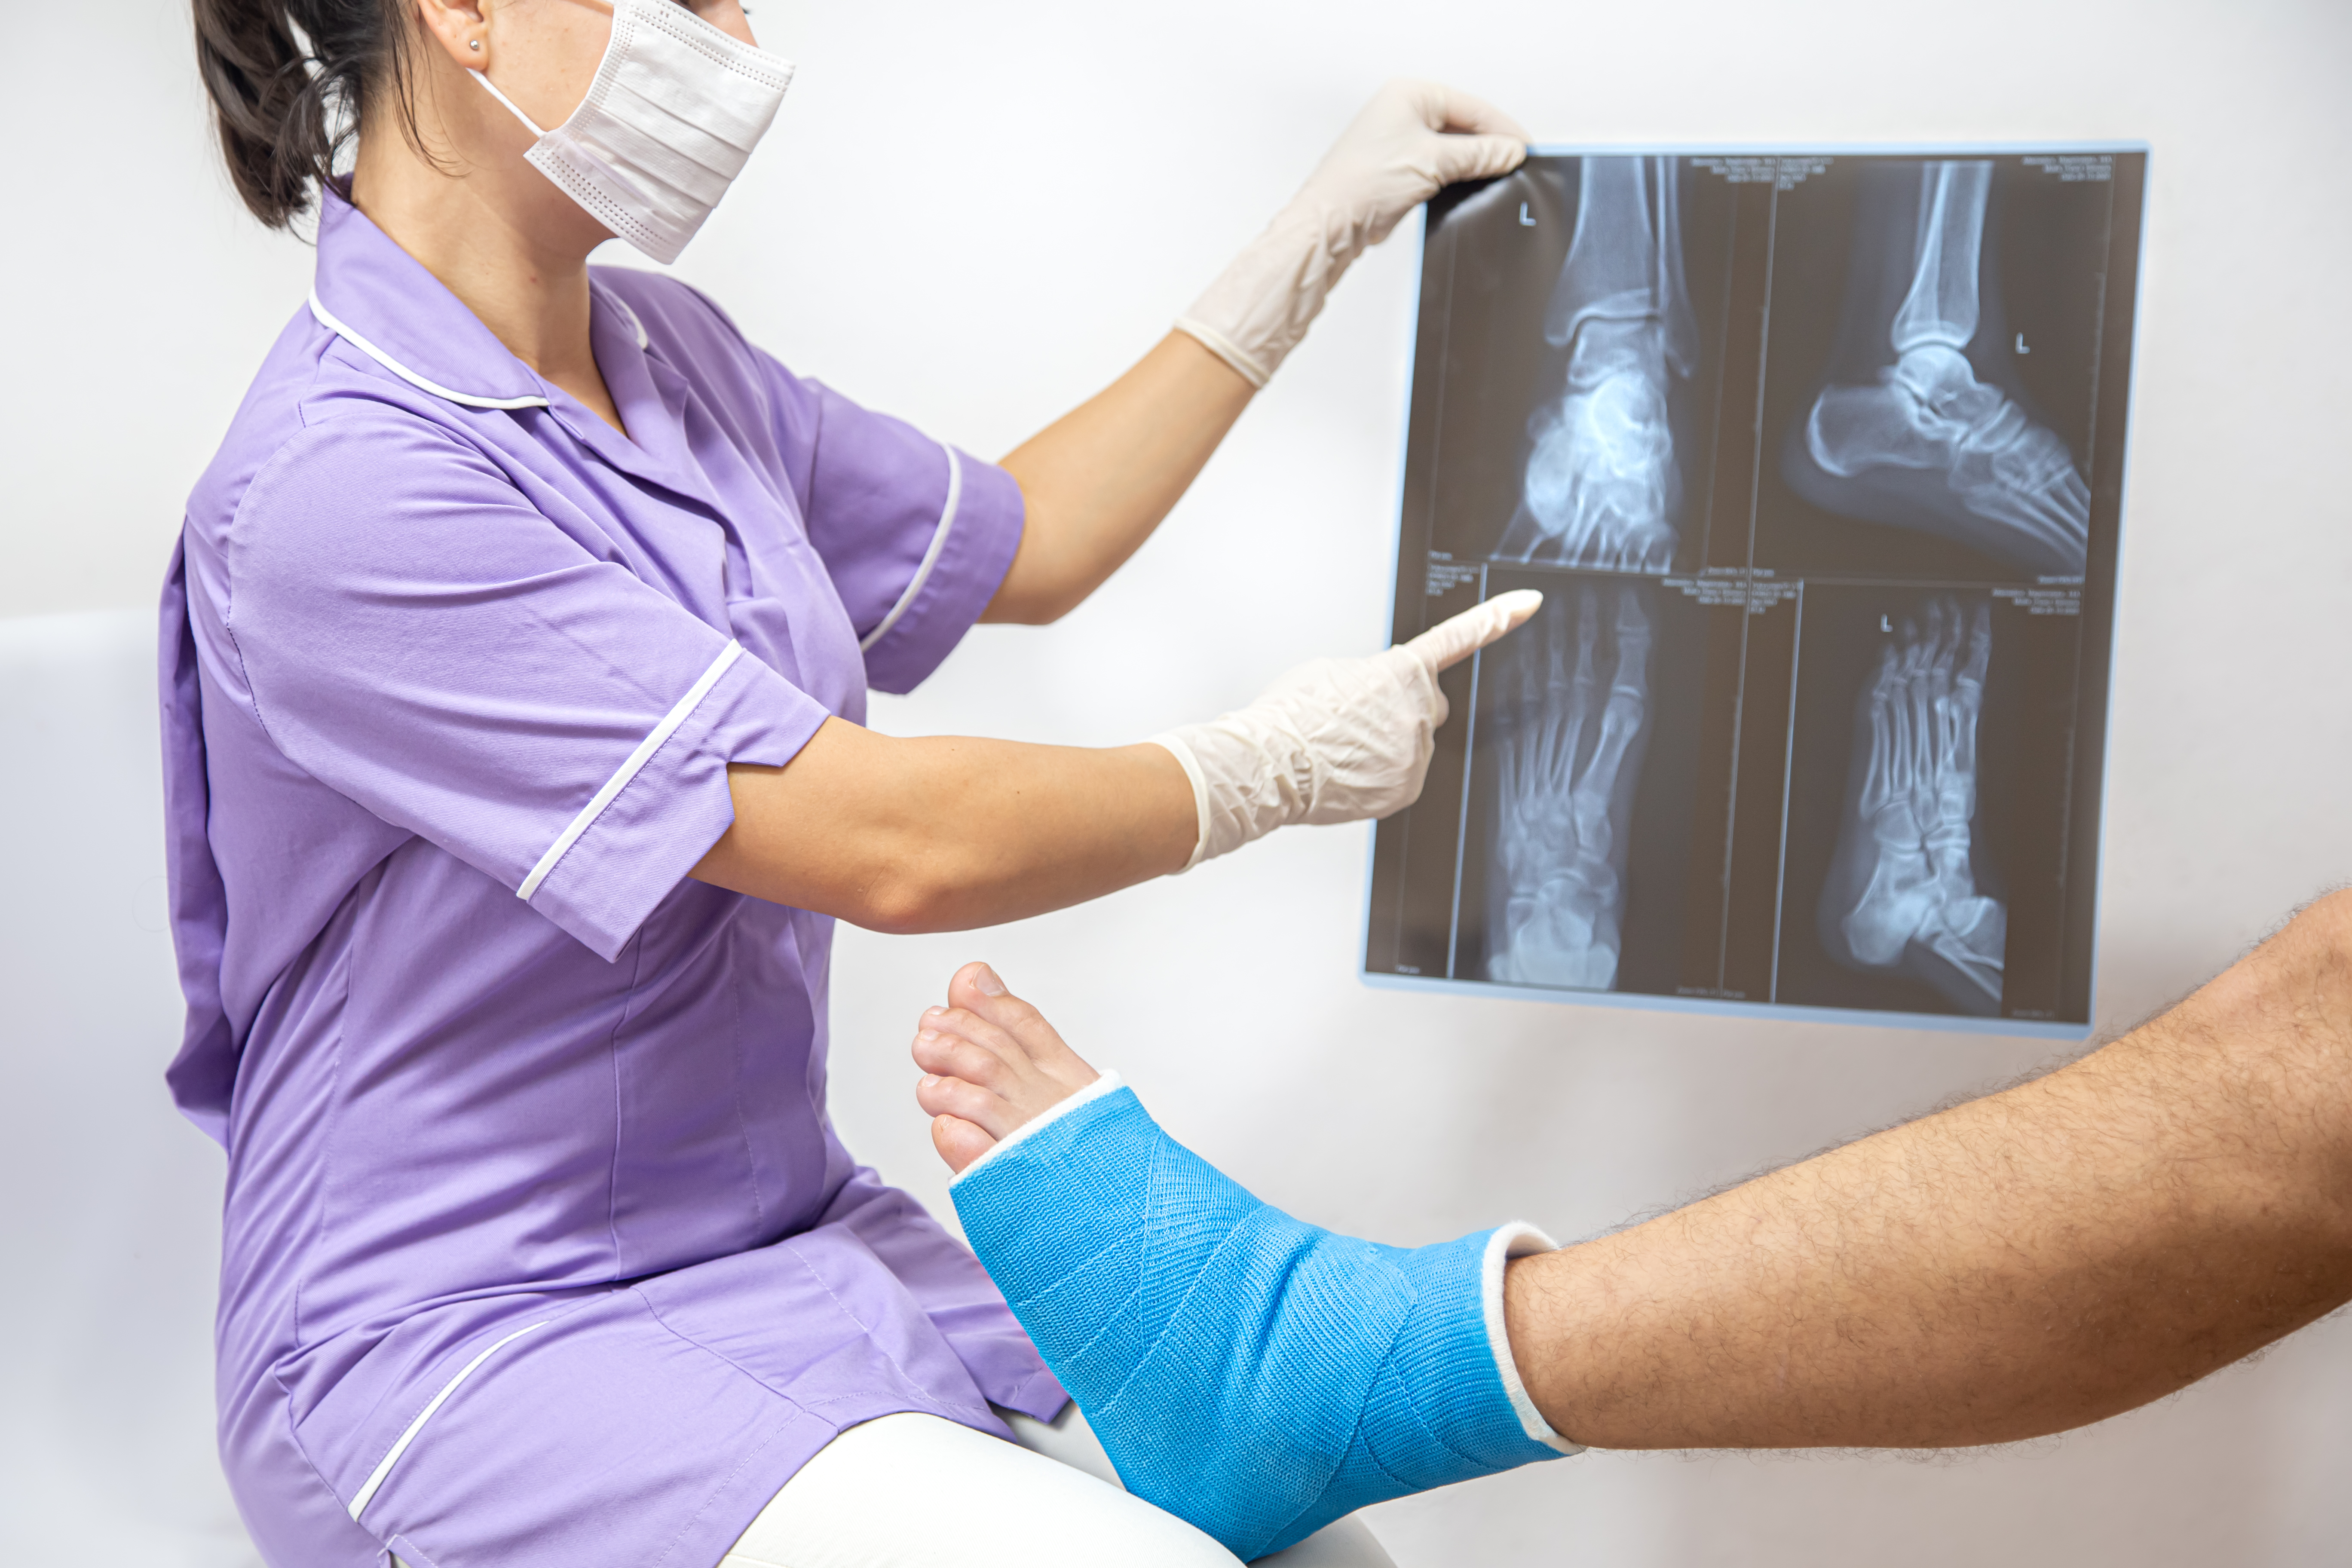 Traumatología: prevé, trata y rehabilita lesiones de huesos y músculos